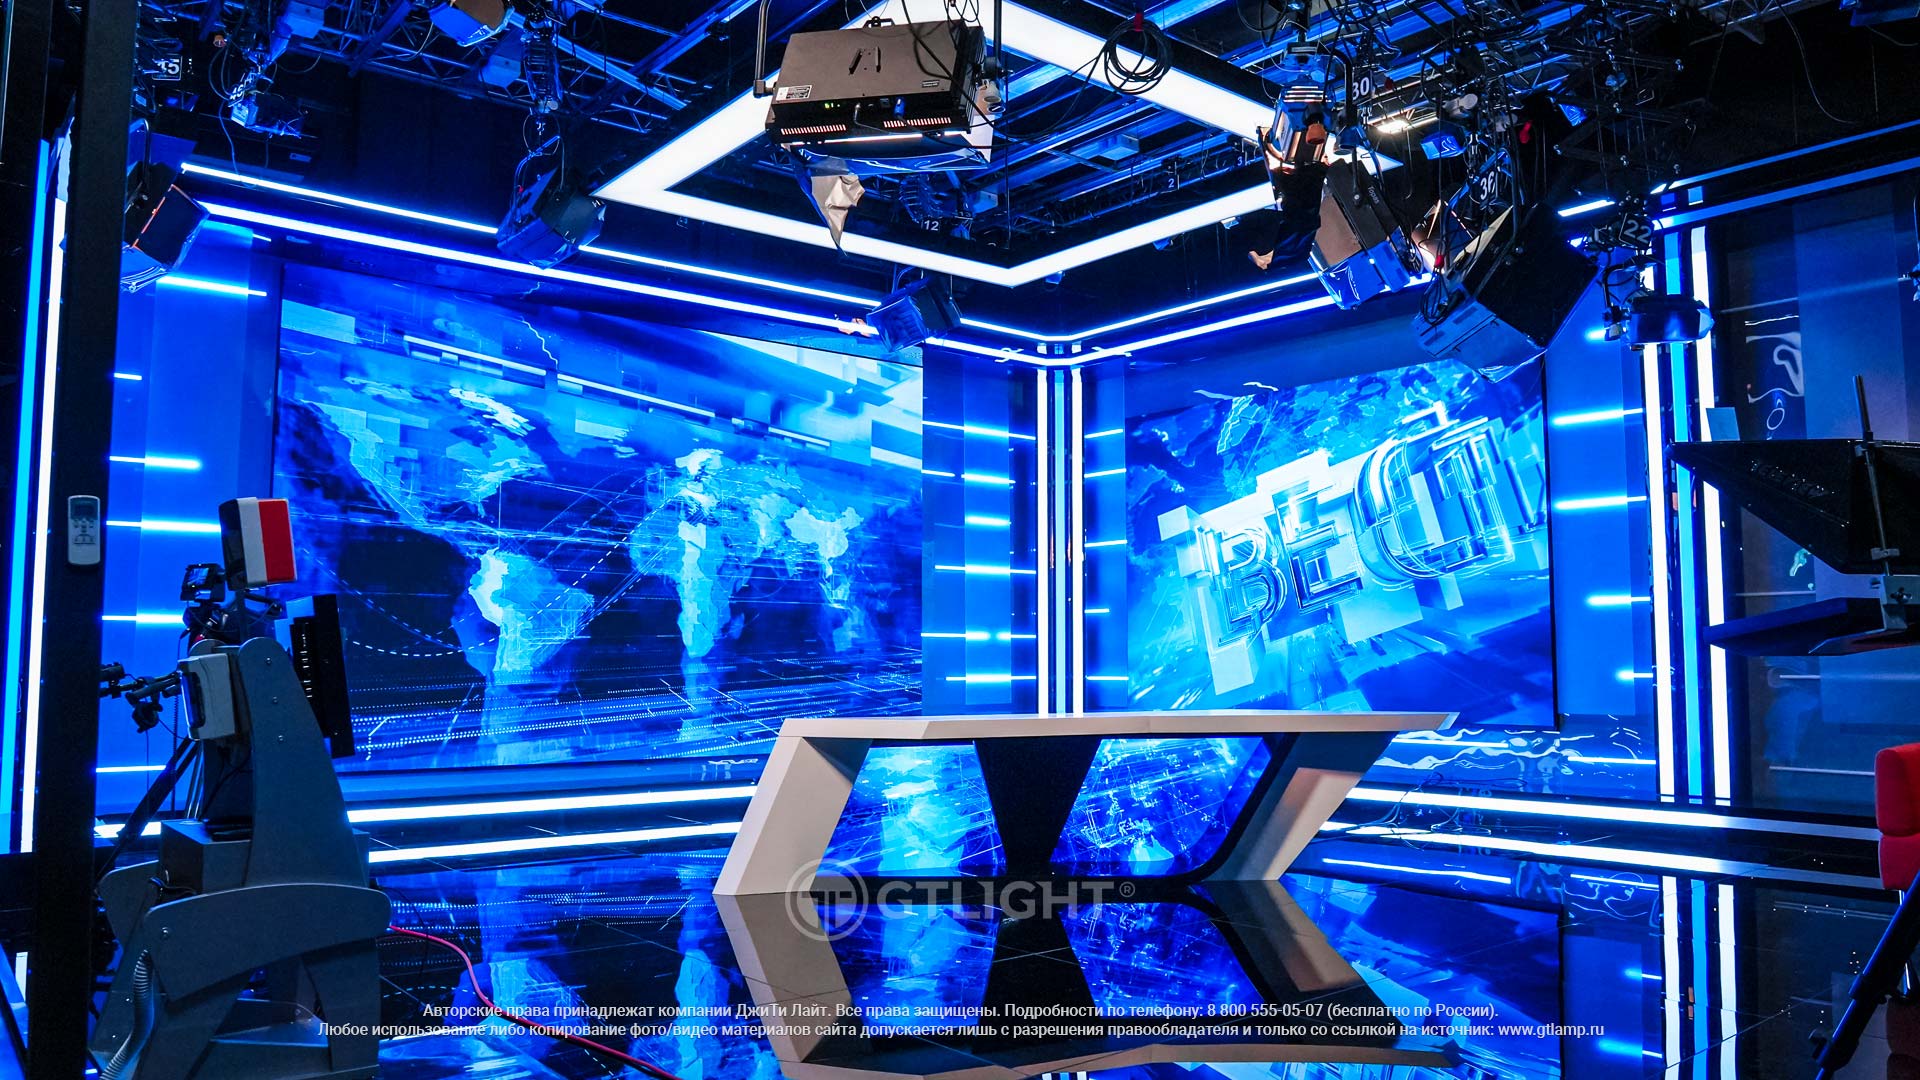 Светодиодные экраны для телестудии, Тула, ВГТРК, «Вести Тула», фото 4